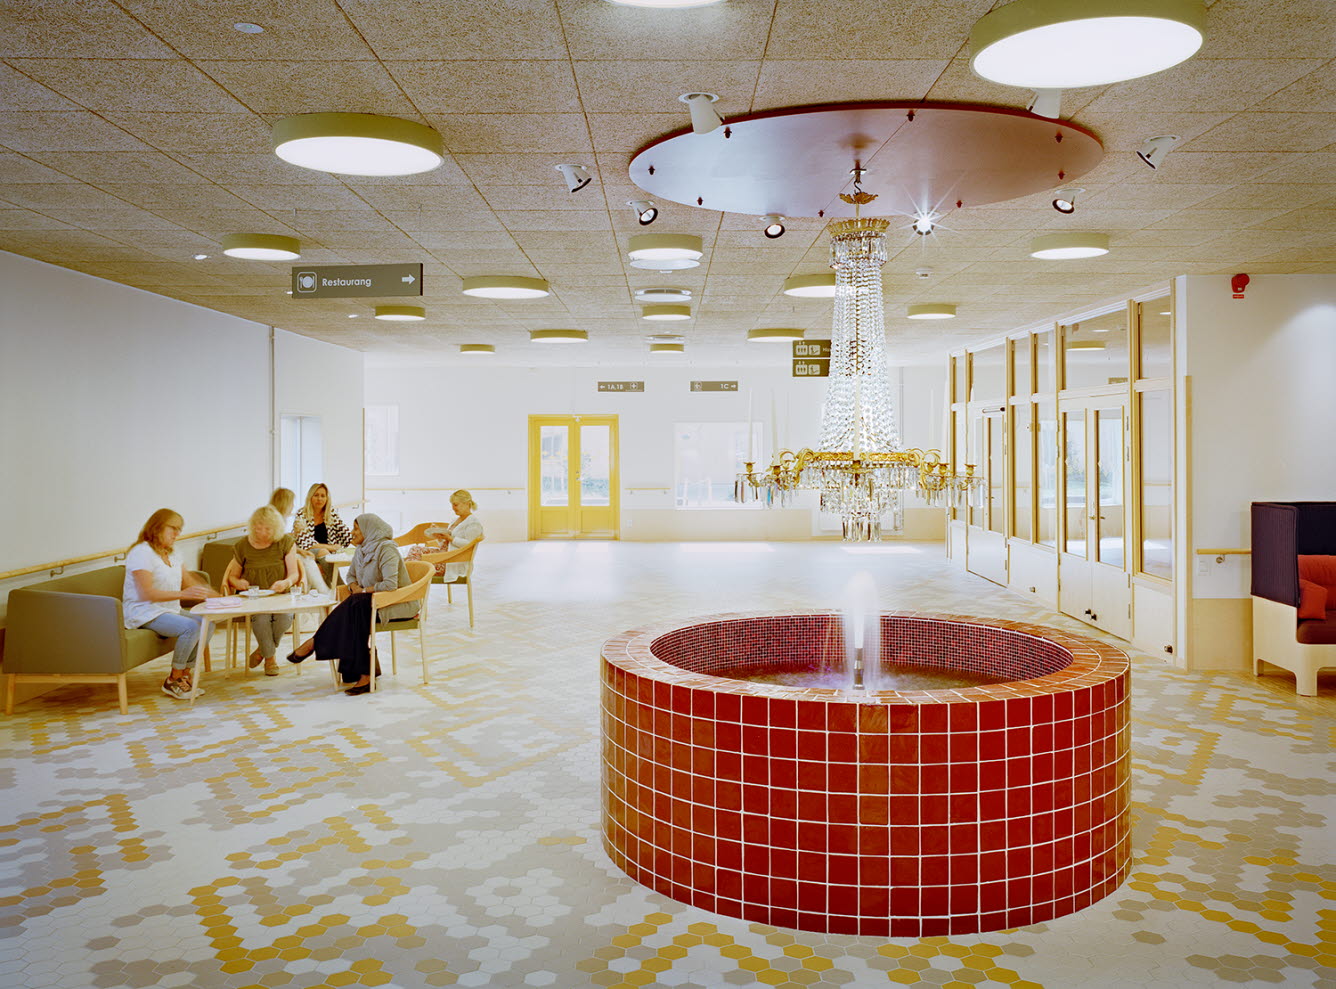 Väntrum där patienter sitter och väntar. I förgrunden finns en rund röd fontän som det hänger en kristallkrona över.